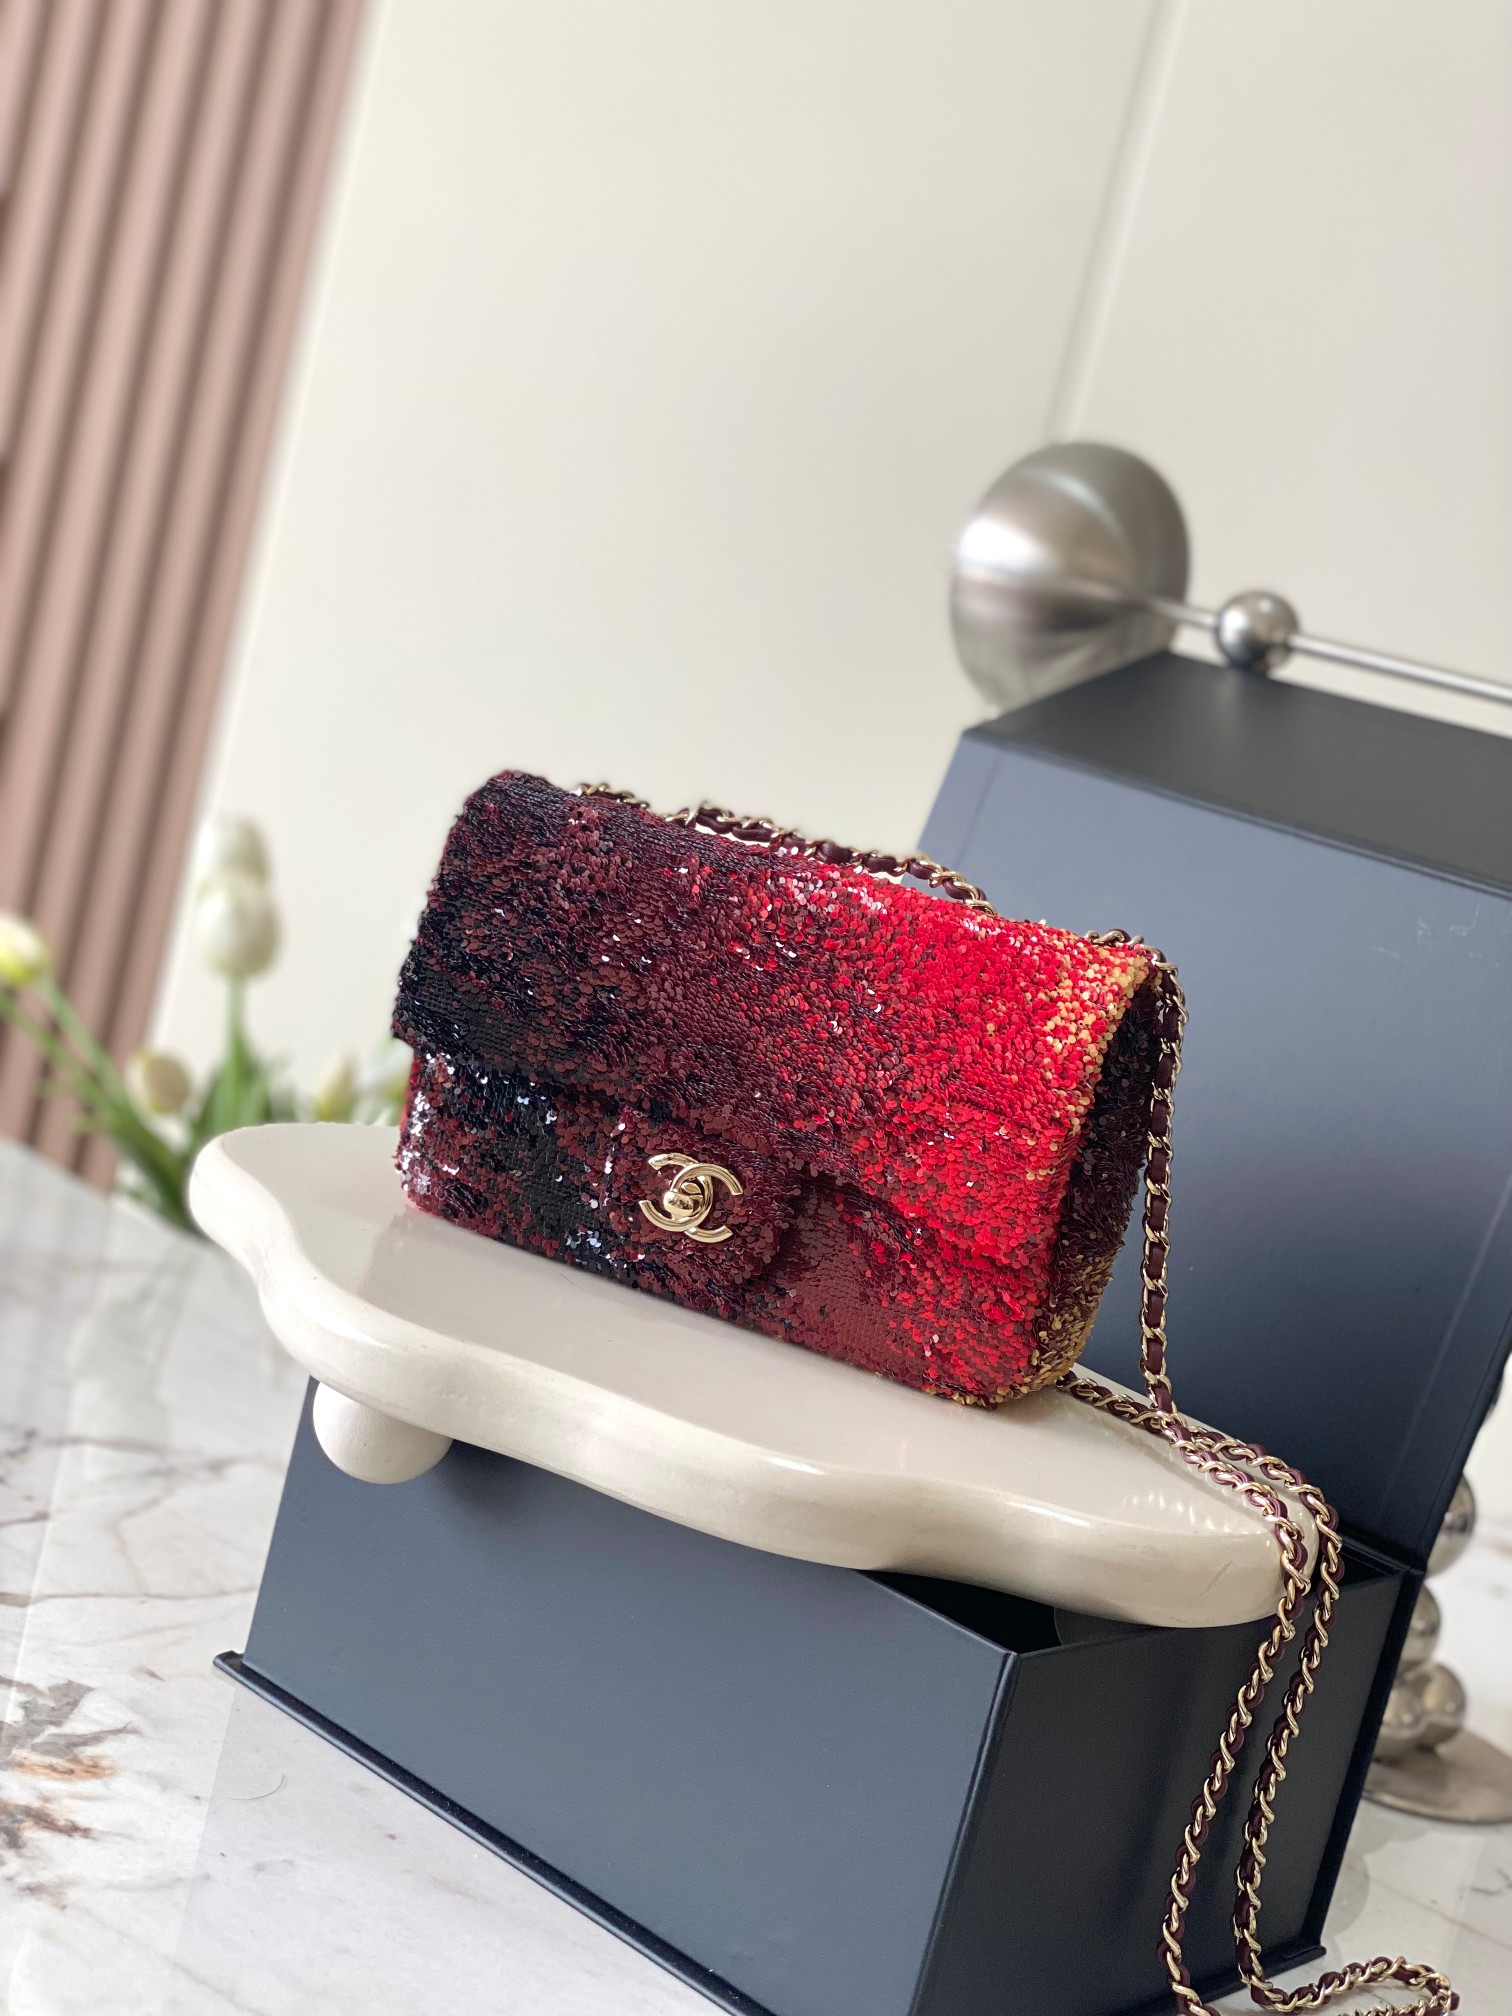 שאנל Chanel Classic Flap Bag תיקים תיקי כתף וצד אדום כל פלדה עור כבשים מיני